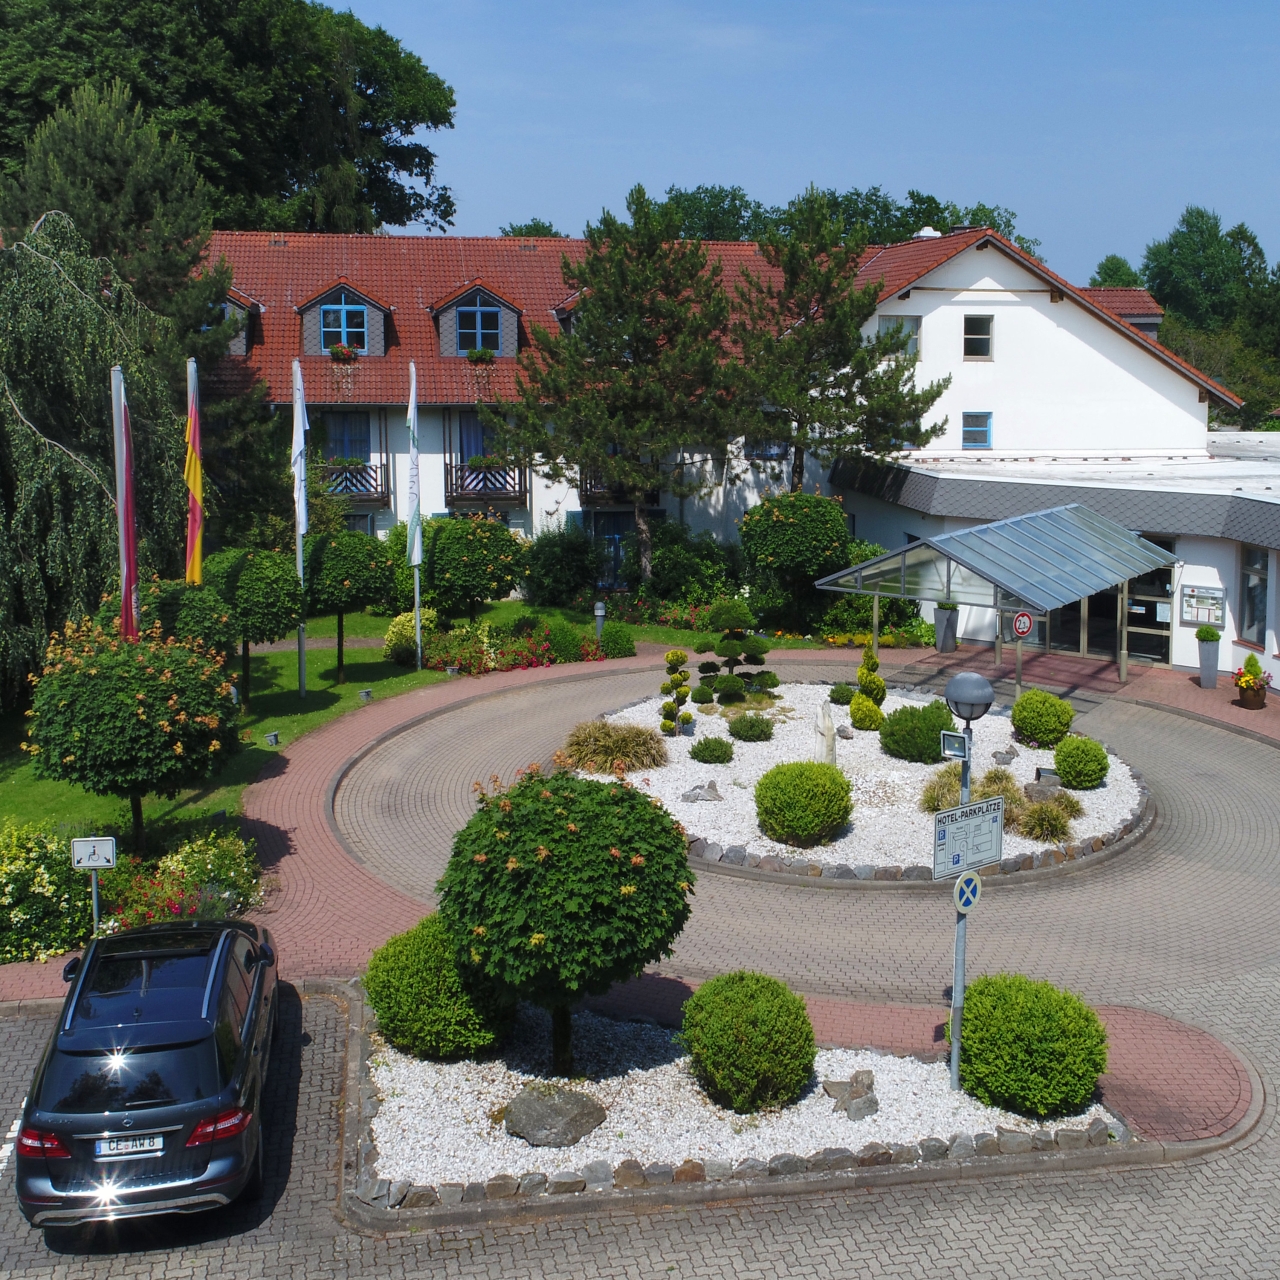 Landhotel Schnuck - 4 HRS star hotel in Schneverdingen (Lower Saxony)